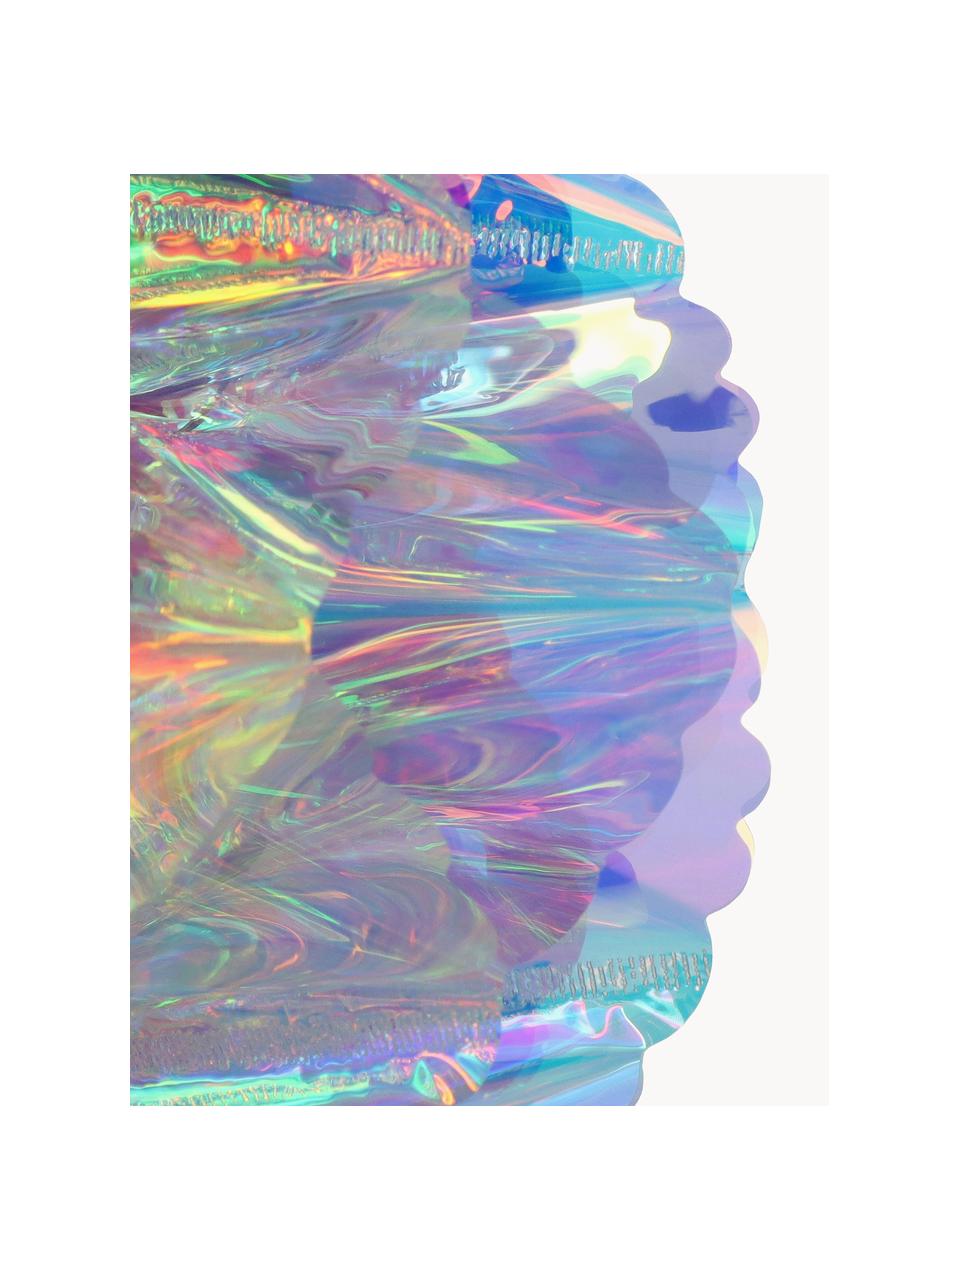 Adorno navideño Iridescent, Plástico, Cromo, transparente, iridiscente, Ø 20 cm